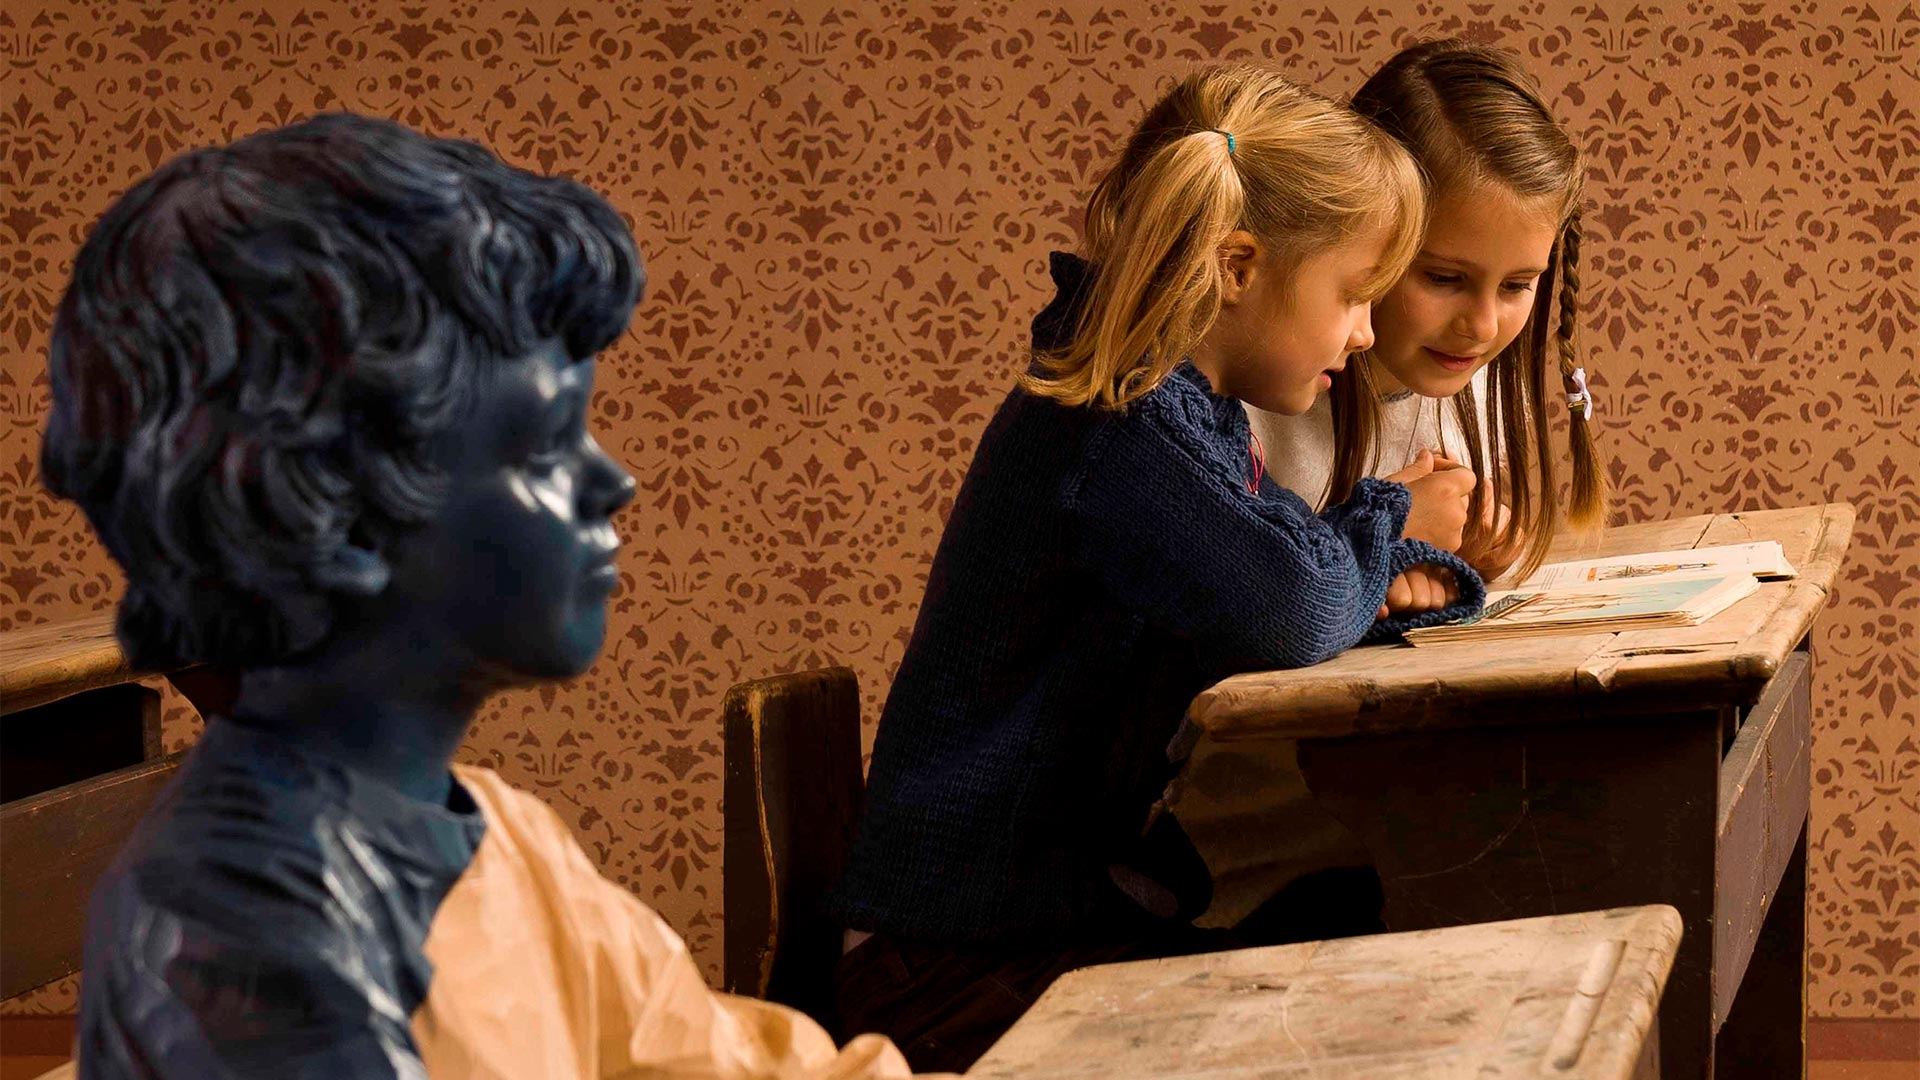 All'interno della stanza di un museo due sorelle stanno sfogliando dei volantini che riportano delle immagini di storia. Accanto a loro è posta una scultura in bronzo di un bambino. 